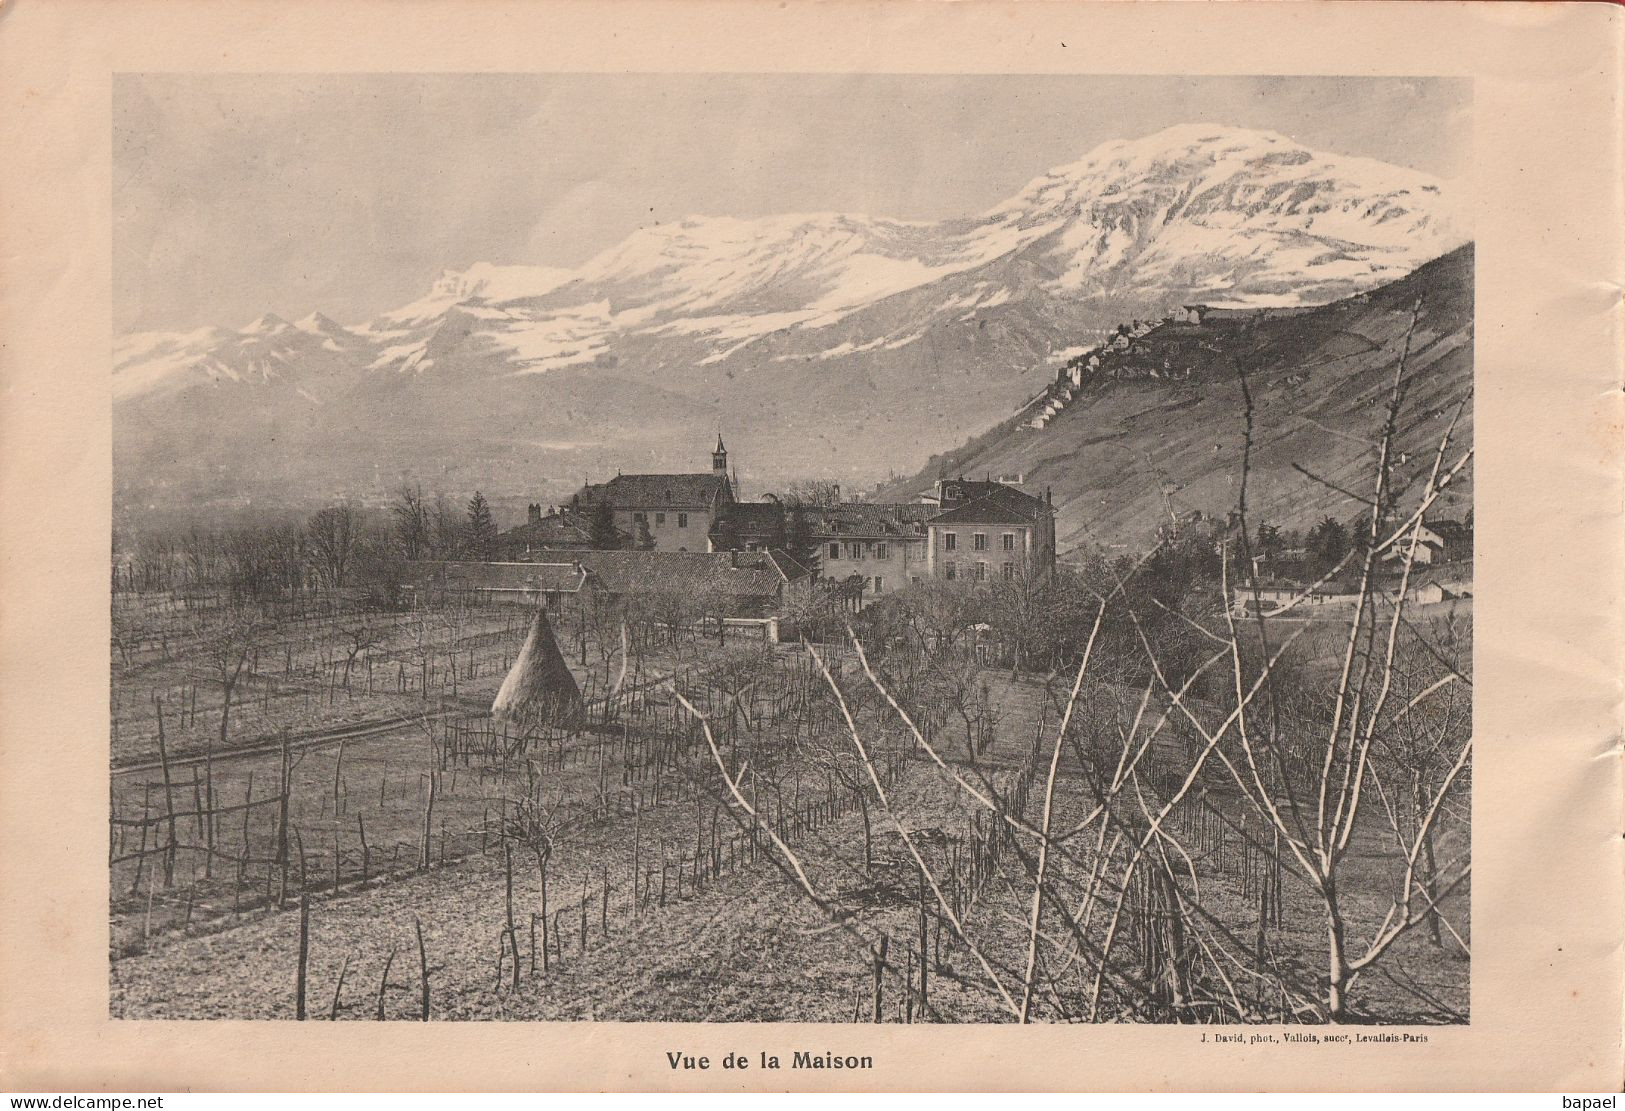 Grenoble (38) - Institution Libre du Rondeau Montfleury (1910-1911)